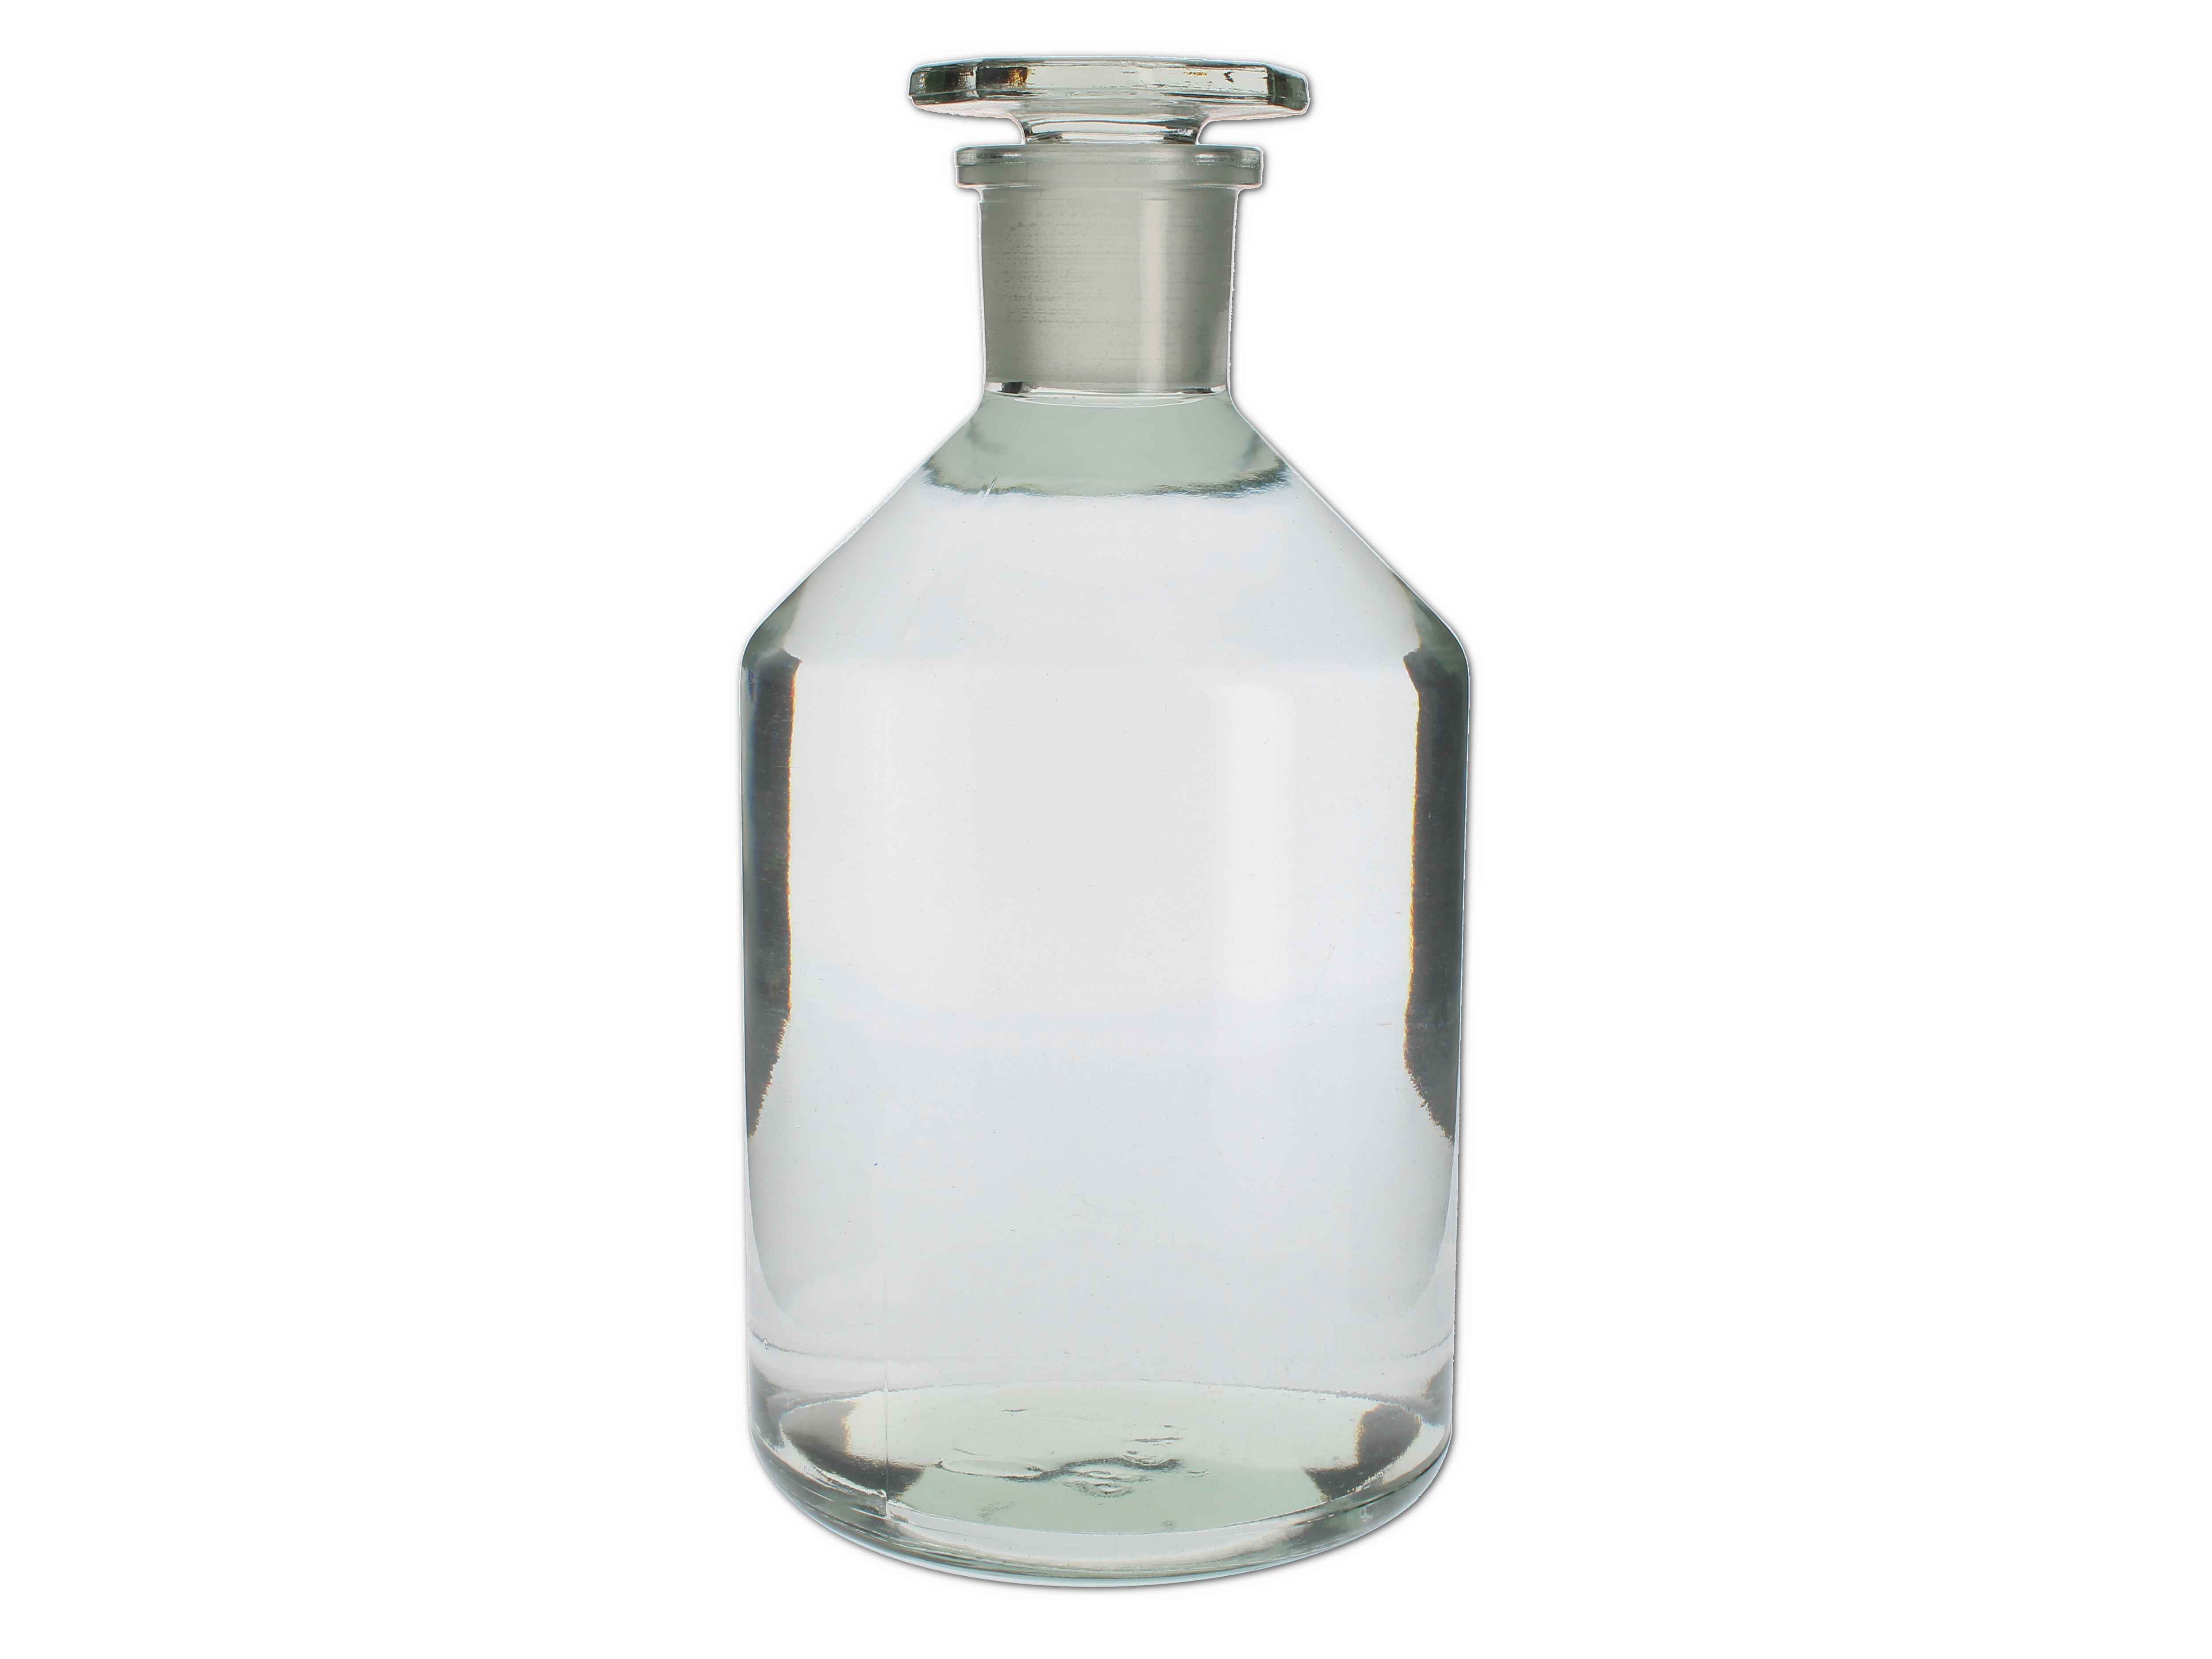    Standflasche weiß mit Glasstopfen - 1000 ML